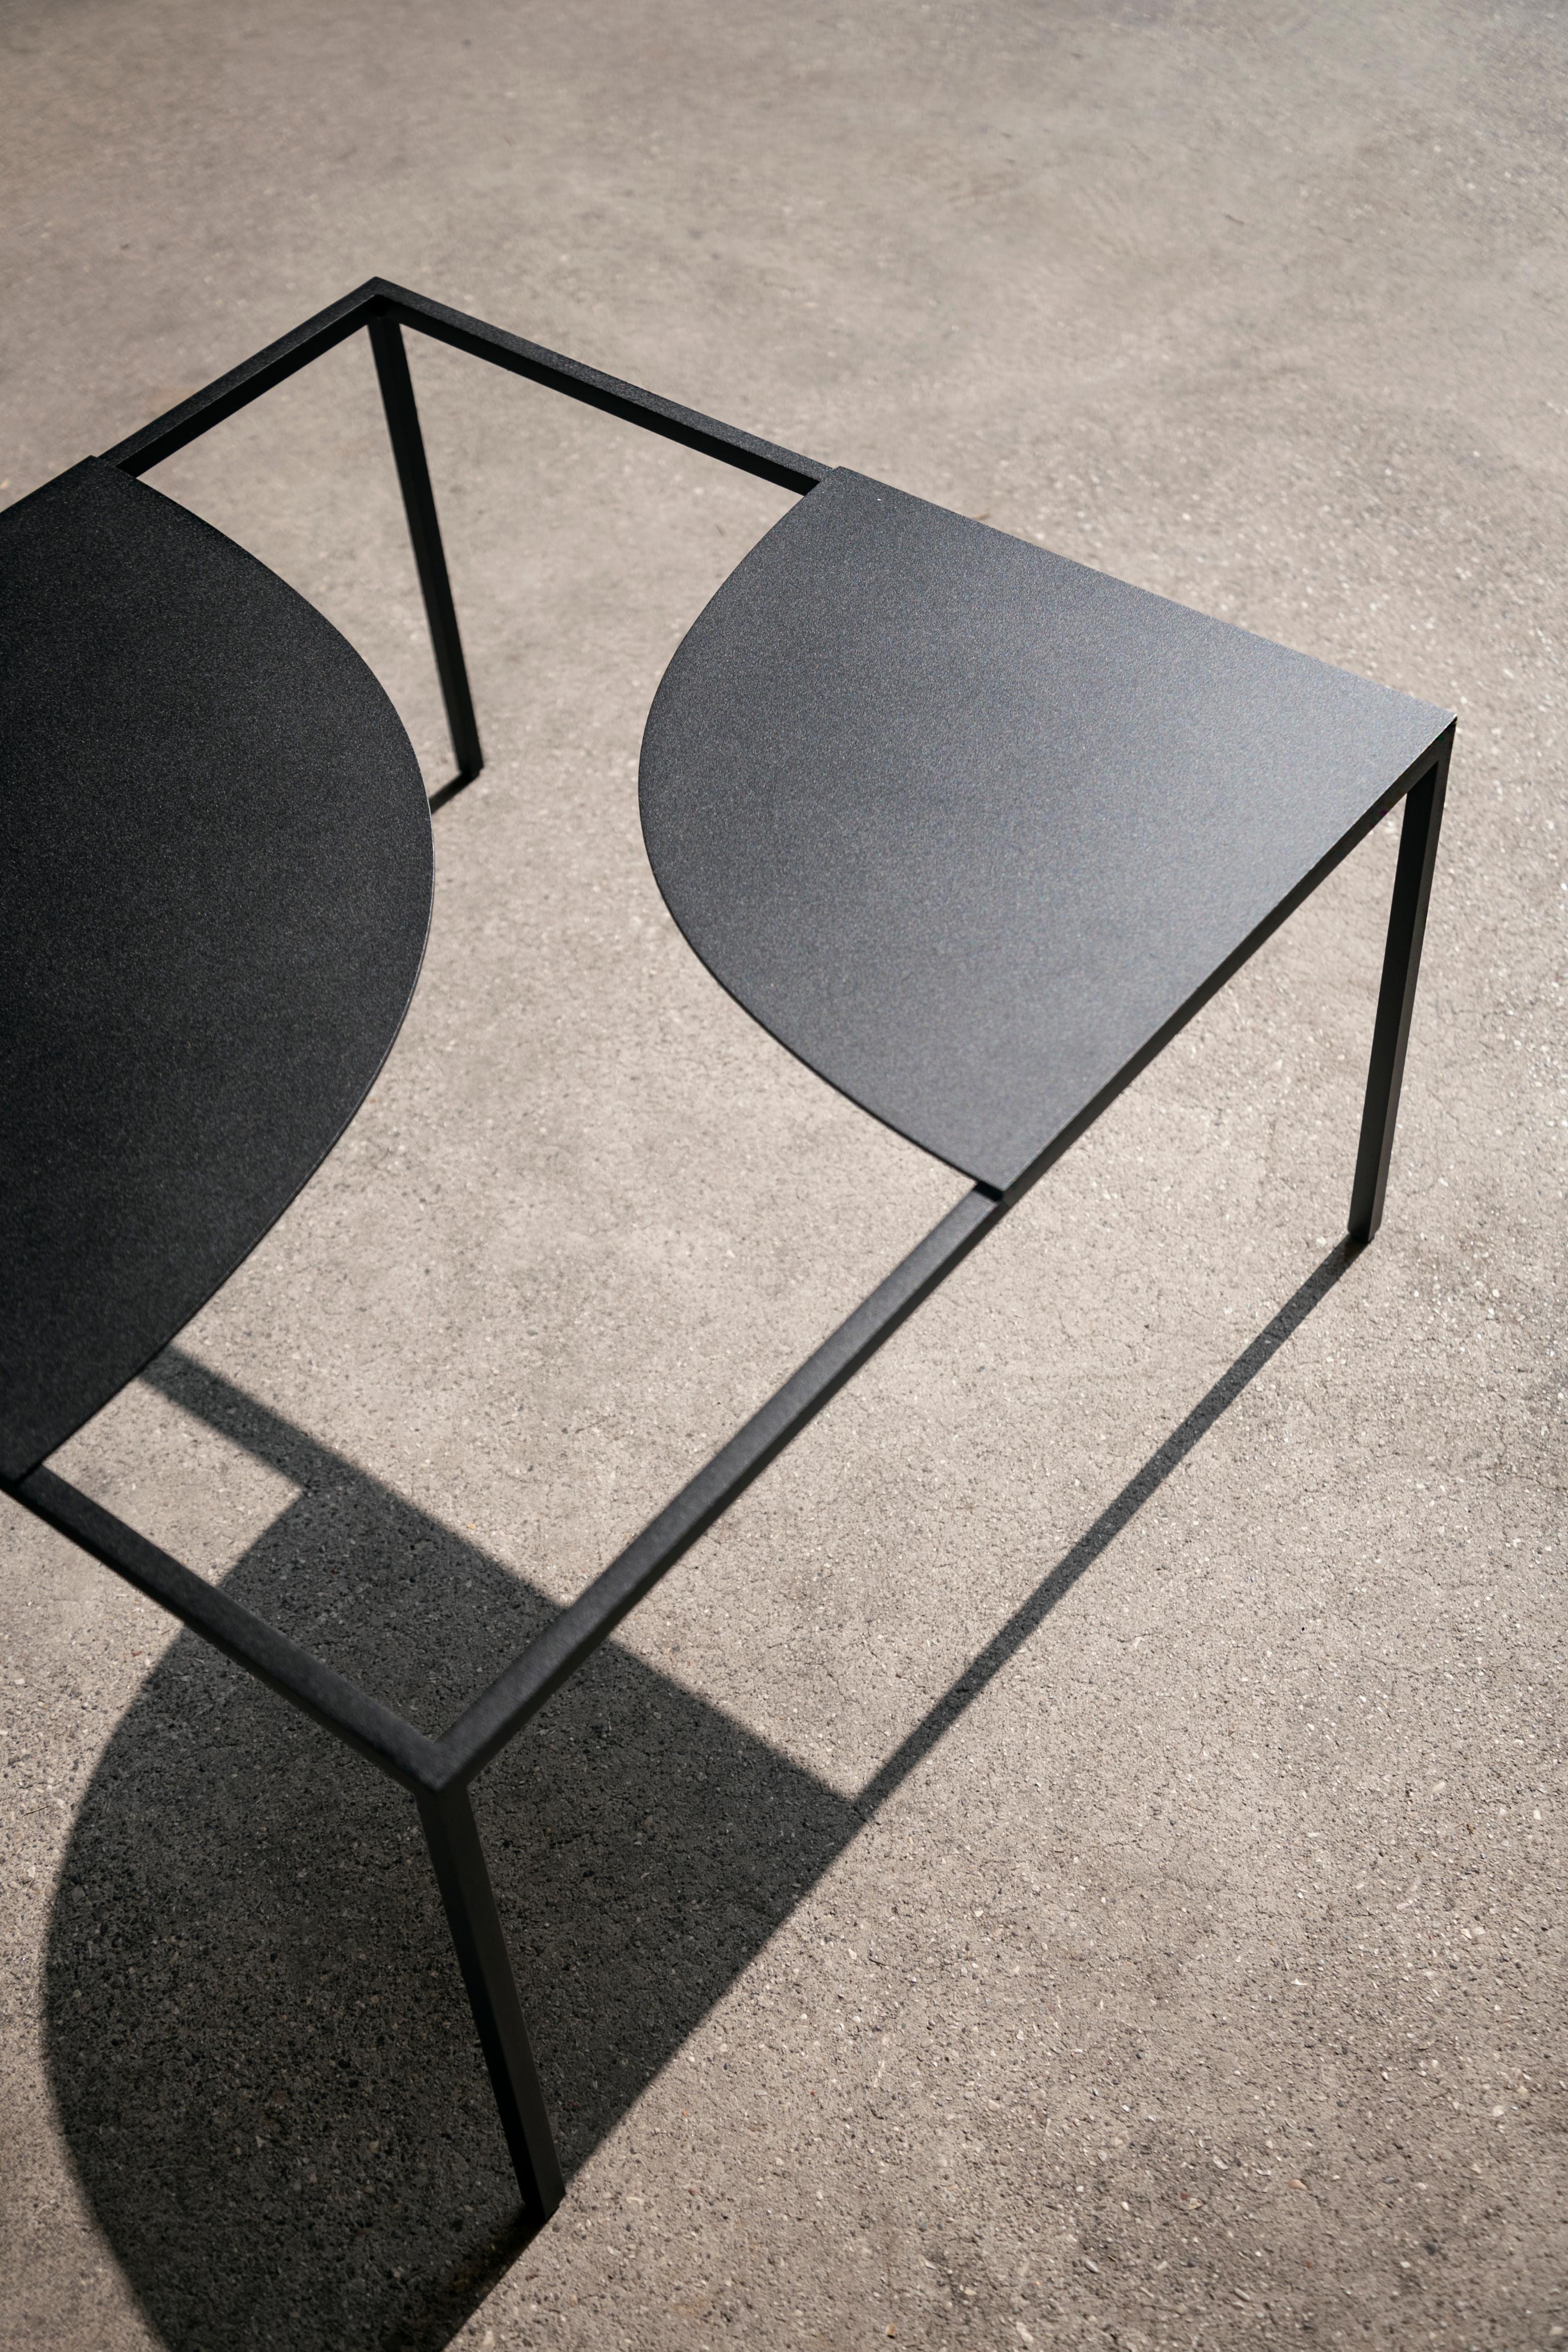 La Manufacture-Paris Creek Table Designed by Nendo For Sale 6